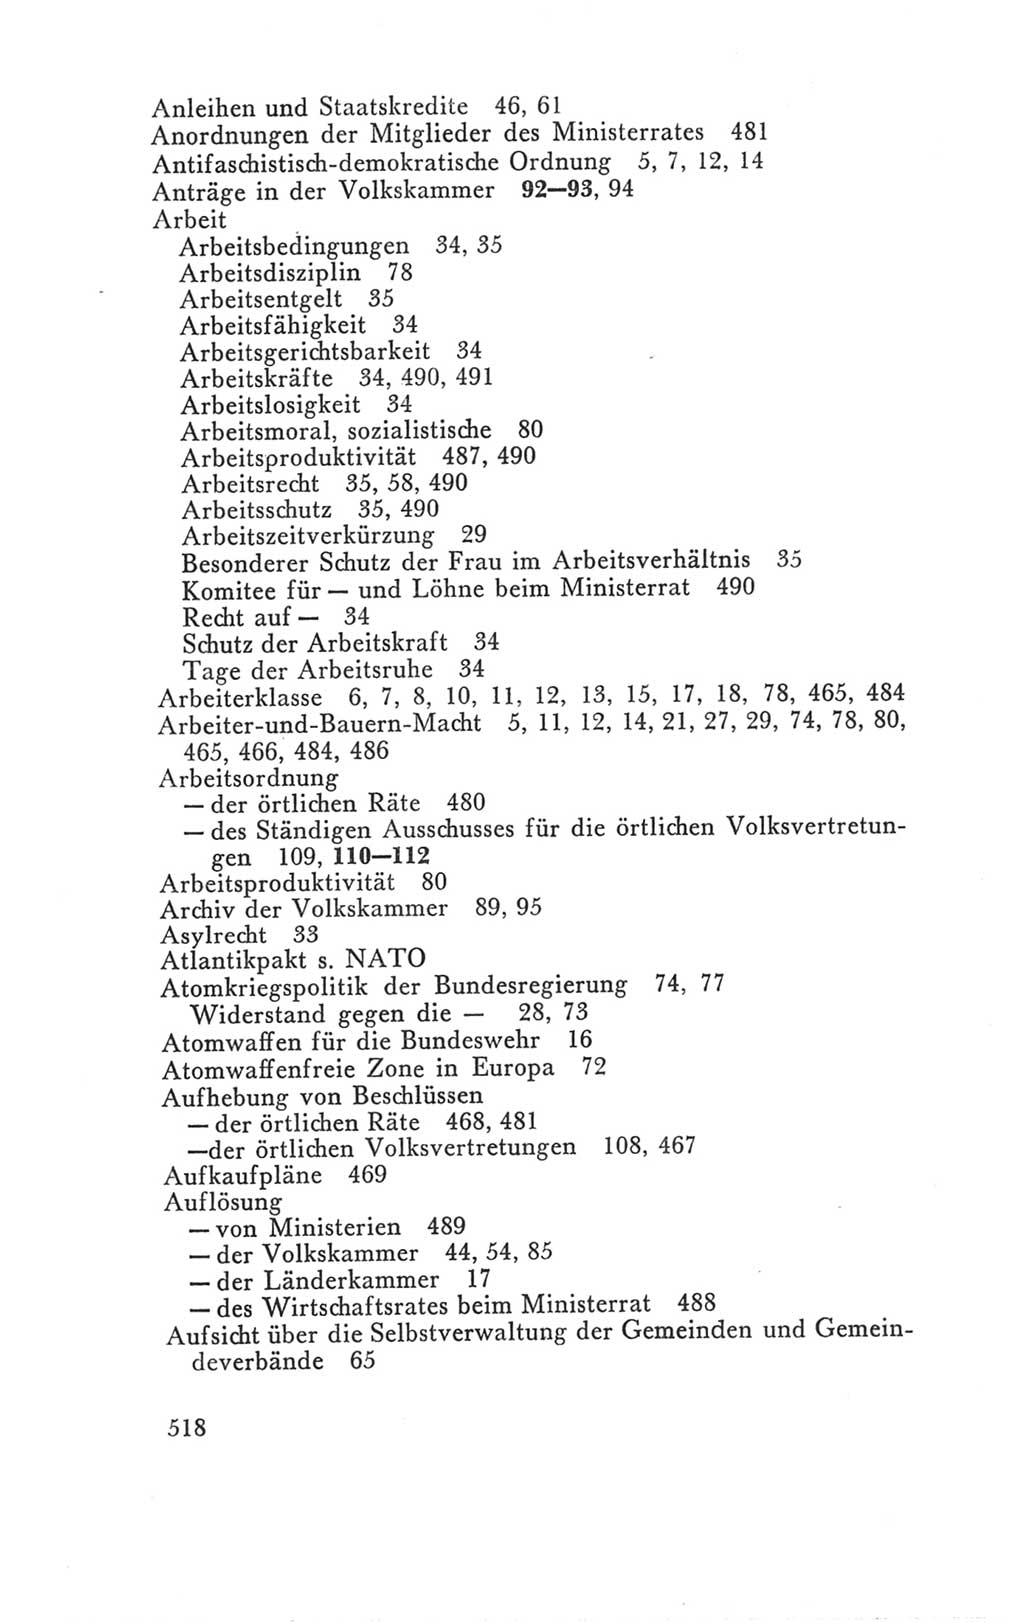 Handbuch der Volkskammer (VK) der Deutschen Demokratischen Republik (DDR), 3. Wahlperiode 1958-1963, Seite 518 (Hdb. VK. DDR 3. WP. 1958-1963, S. 518)